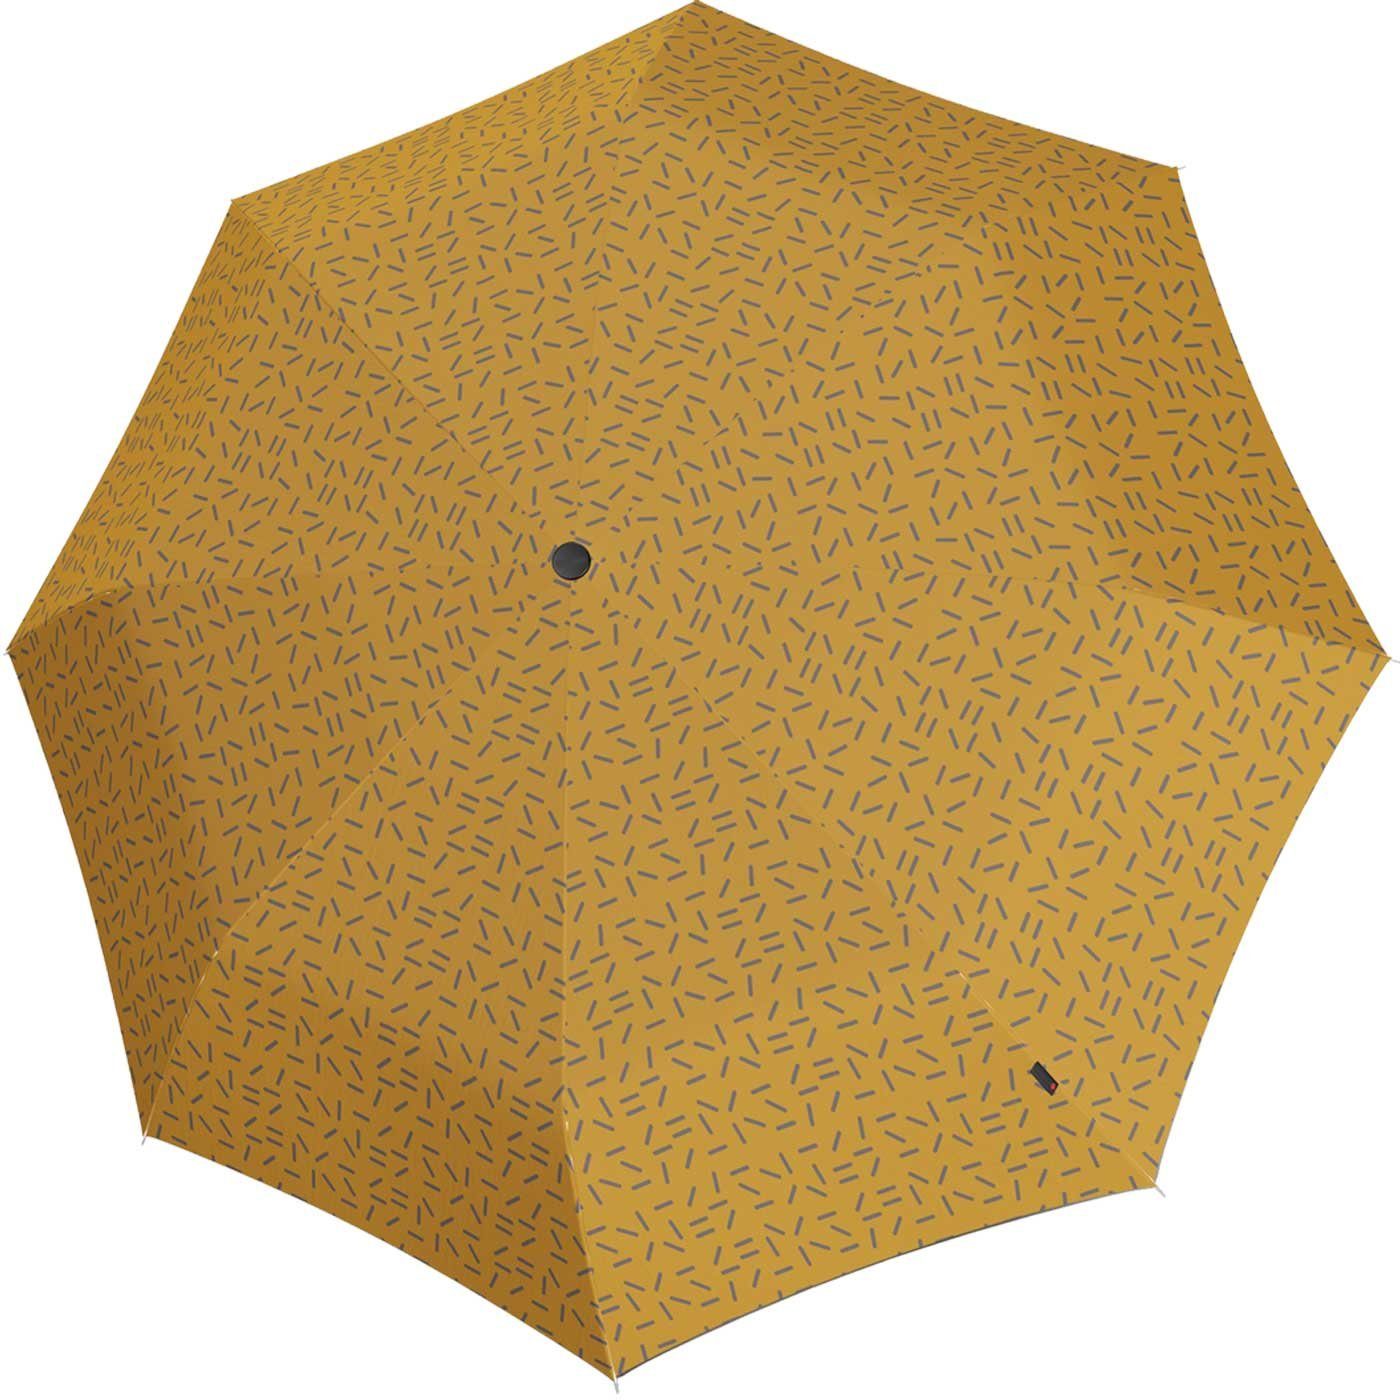 Knirps® Langregenschirm Damen A.760 Auf-Automatik - 2Dance, groß und stabil